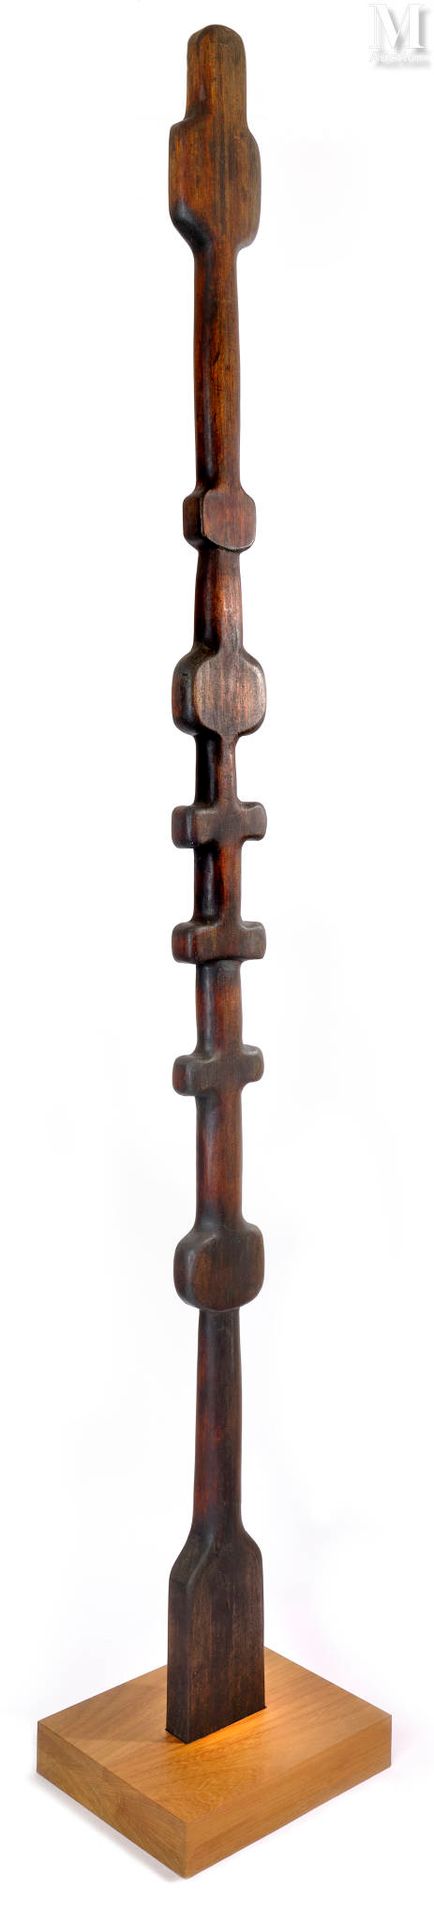 François STAHLY (1911-2006) Ohne Titel

Holz geschnitzt
Höhe: 248 cm (einschließ&hellip;